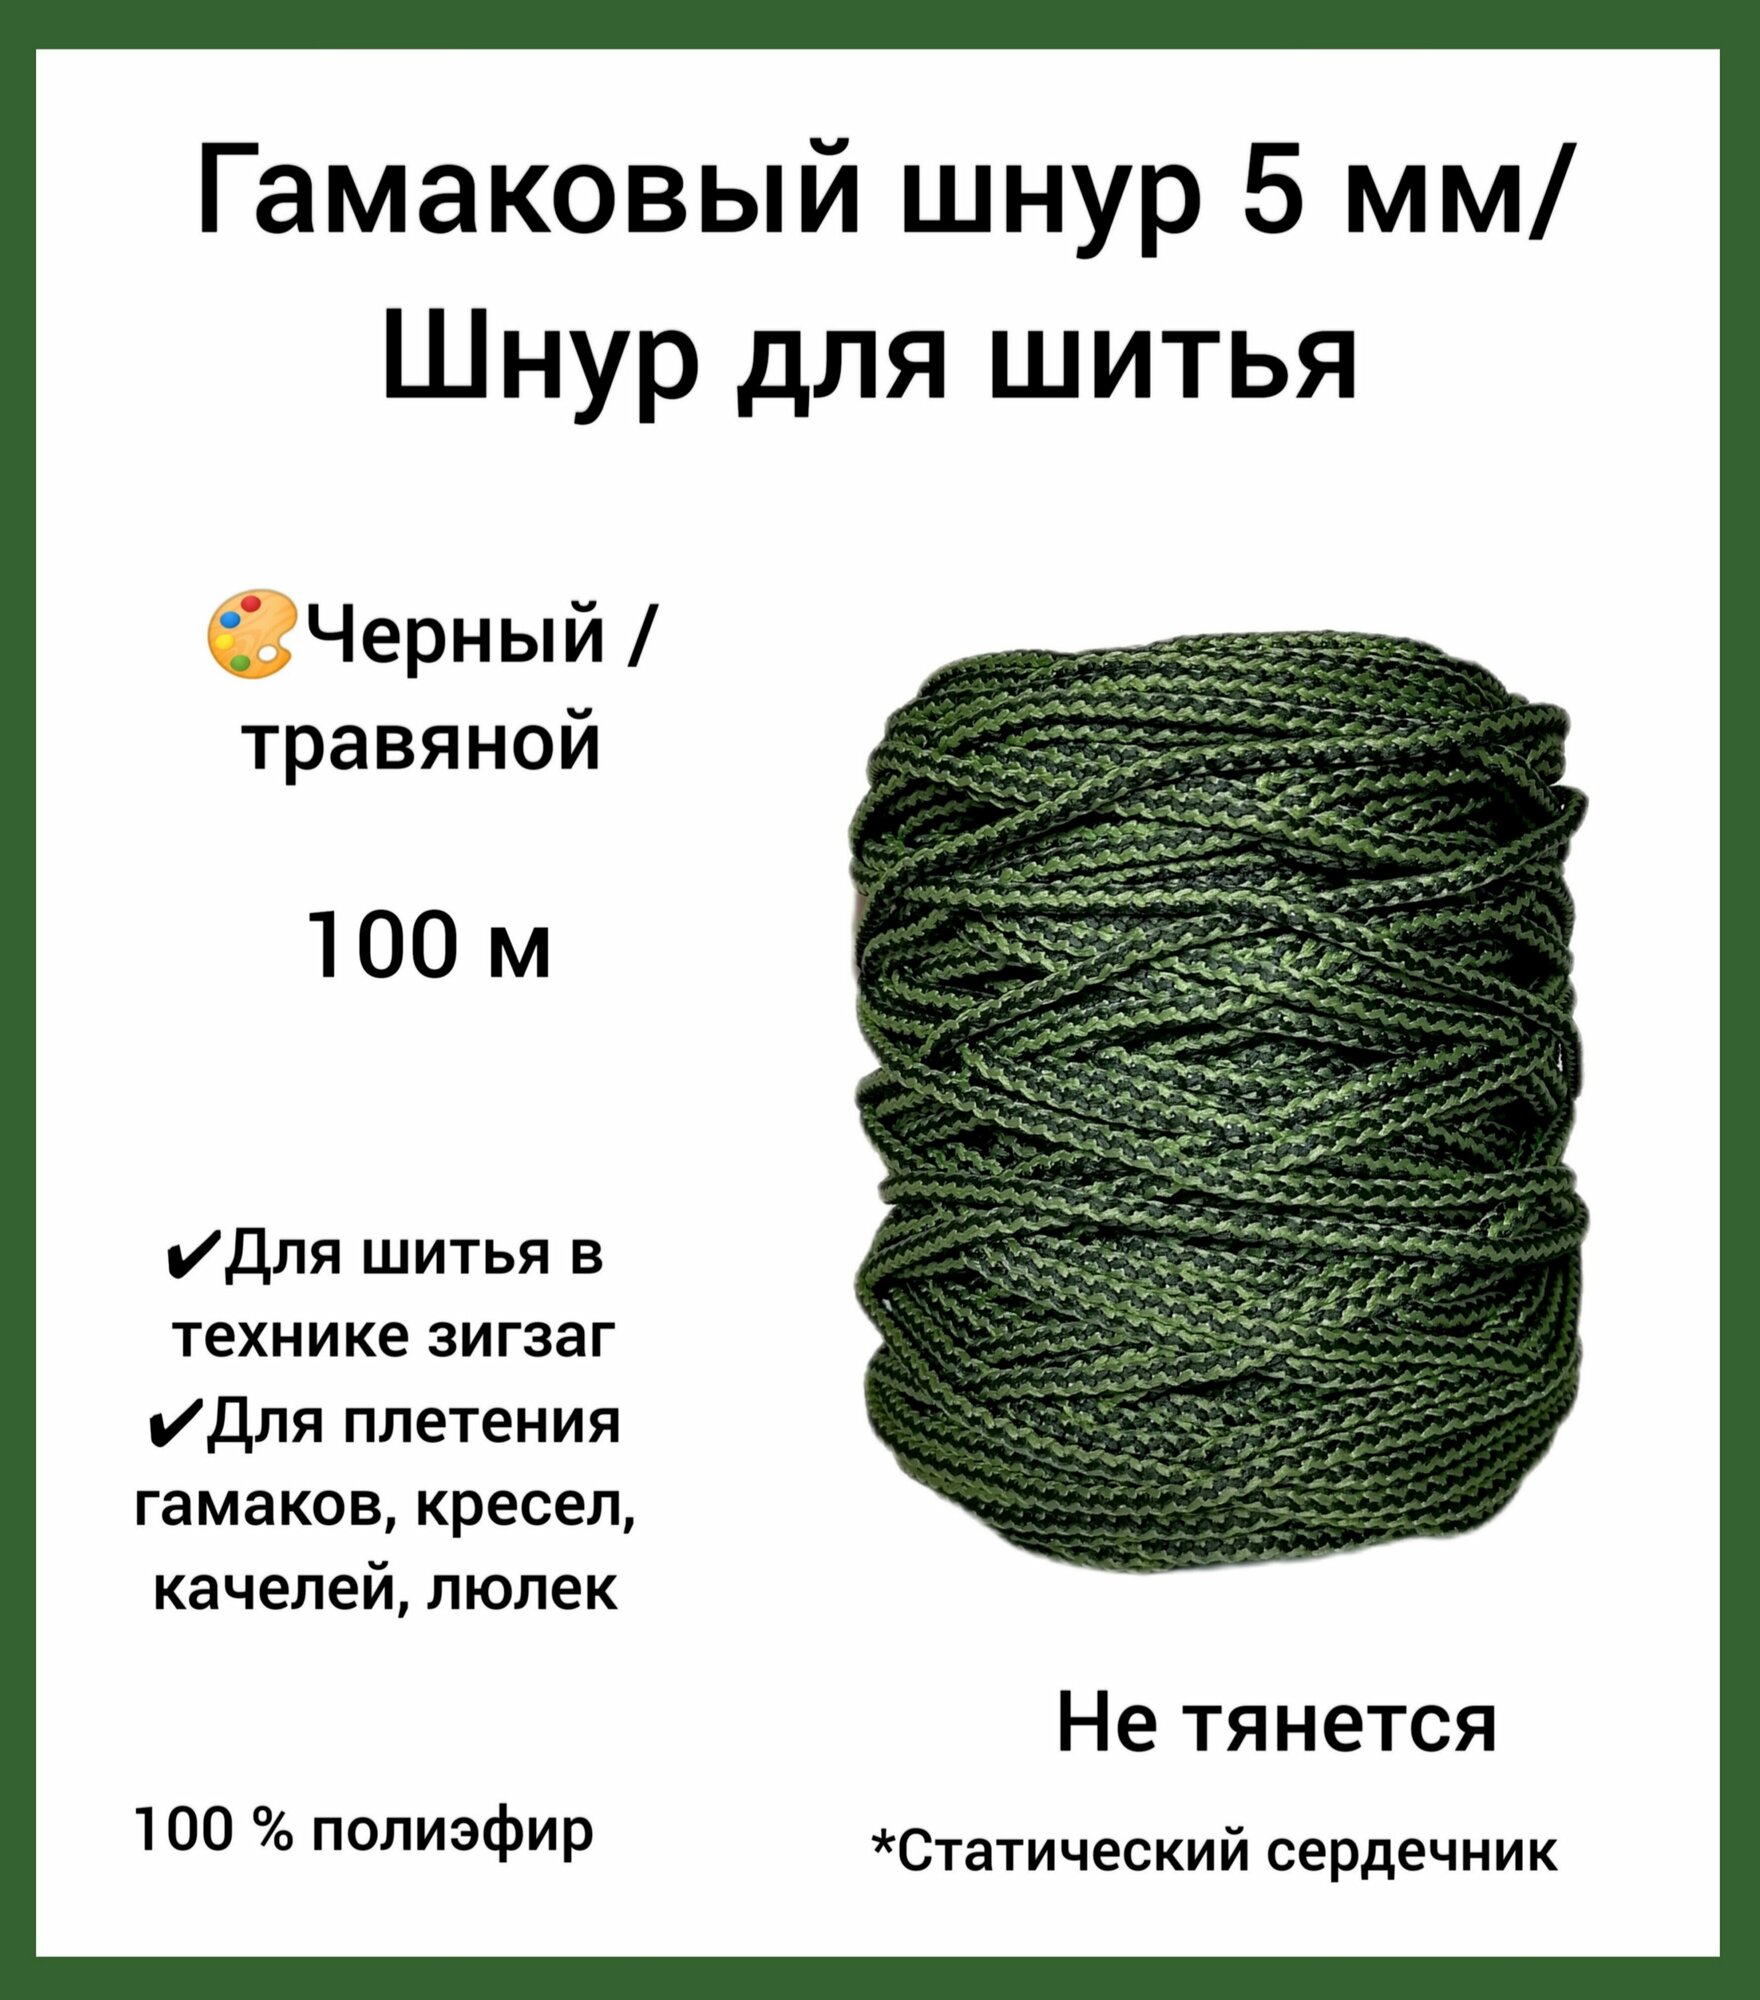 Гамаковый шнур 5 мм со статическим сердечником эльнить, 100 м, 100% полиэфир, /шнур для шитья и плетения макраме/"черный/травяной"